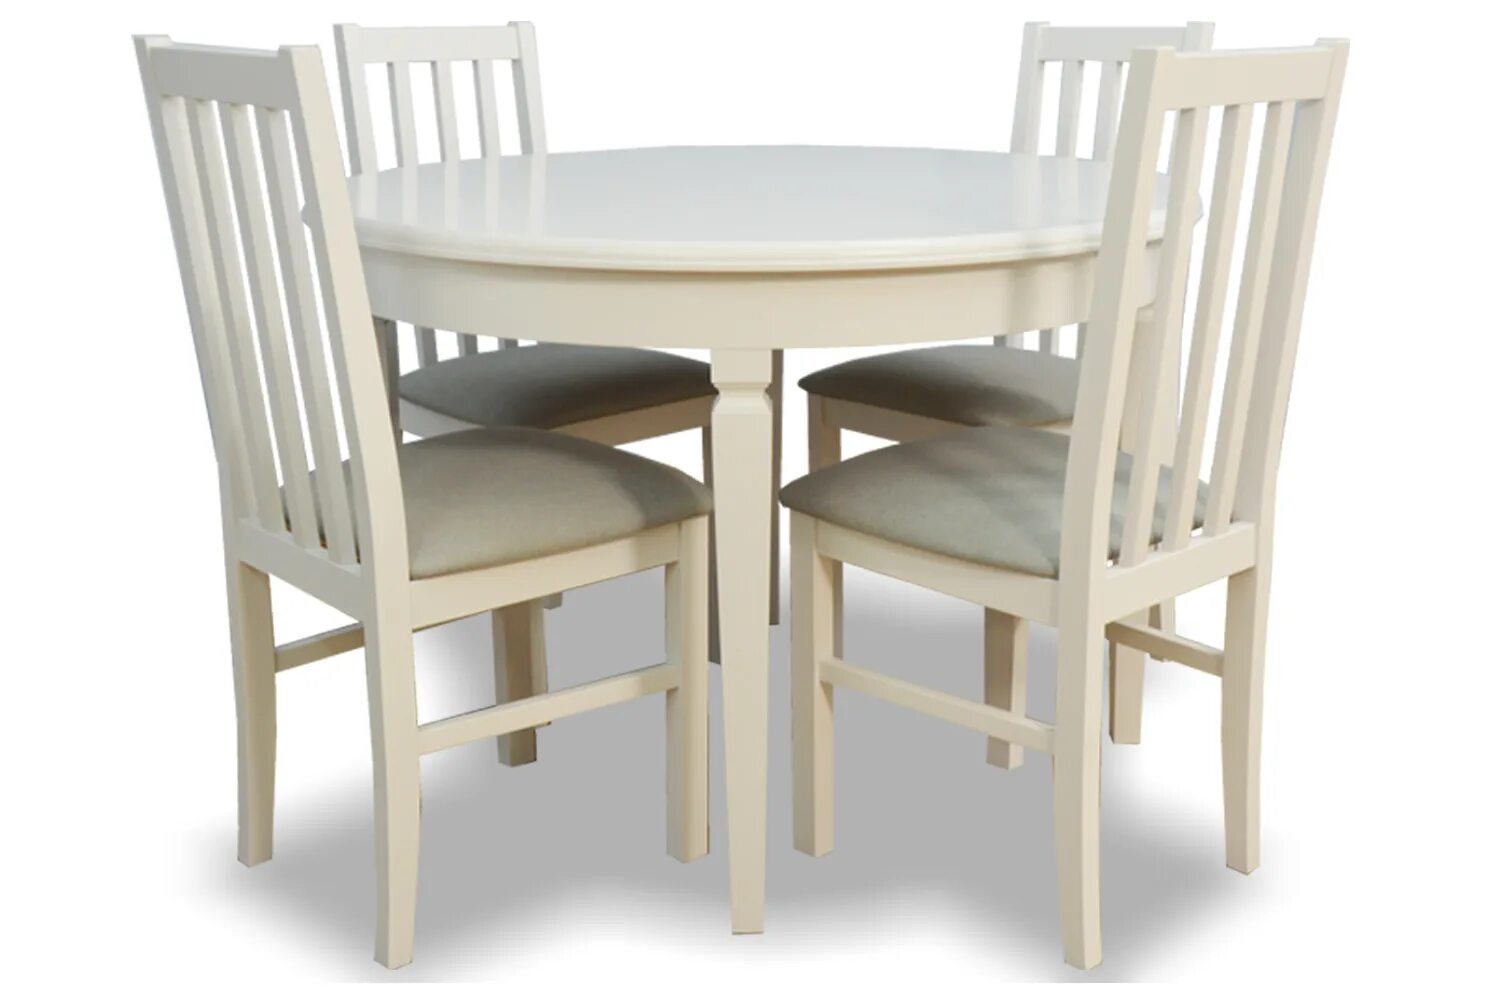 Комплект стульев 4 шт для кухни. Обеденный набор Halmar Faust (стол + 4 стула). Хофф наборы стол и стулья. Обеденный комплект для кухни стол и стулья. Кухонный набор стол и стулья.